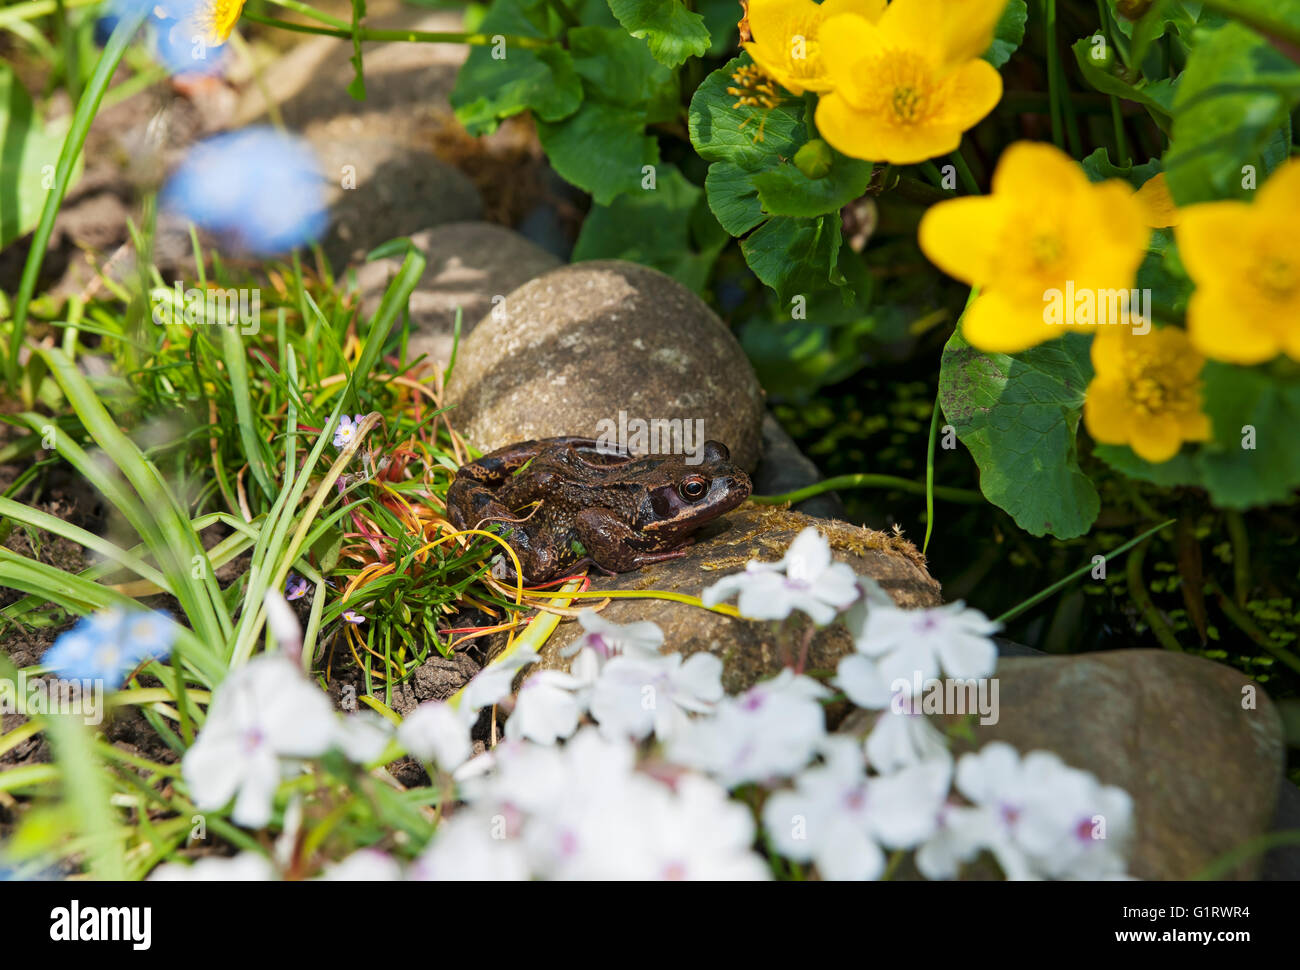 Primo piano di rana comune seduta sul bordo di un giardino fauna selvatica stagno Inghilterra Regno Unito GB Gran Bretagna Foto Stock